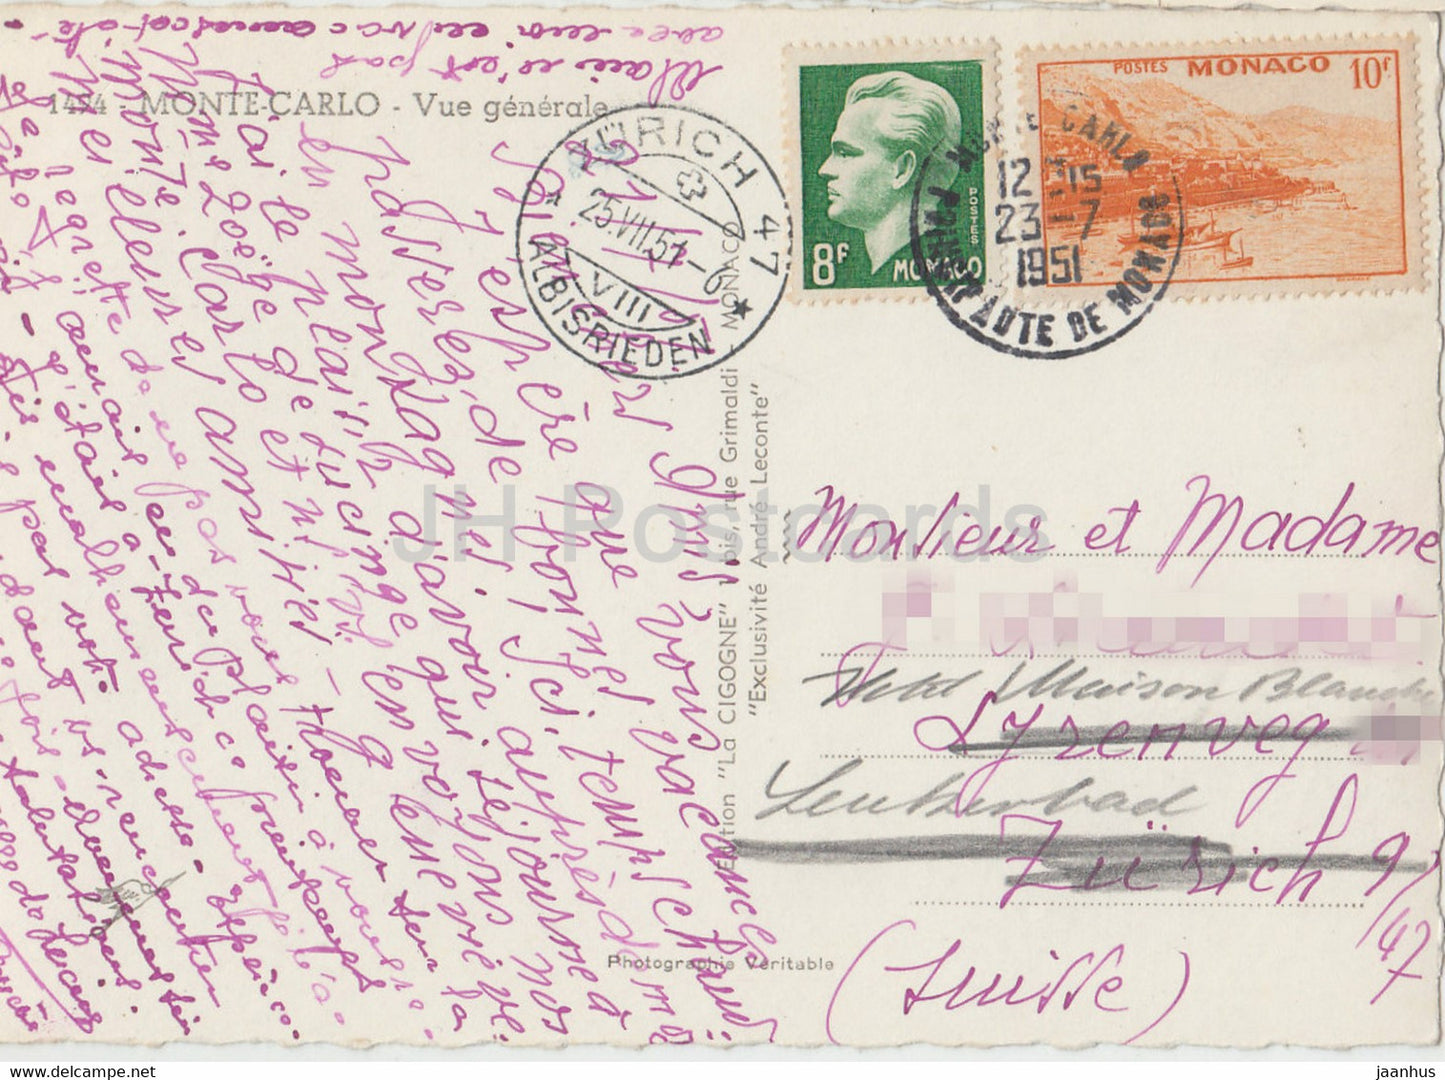 Monte Carlo - Vue Générale - 1494 - carte postale ancienne - 1951 - Monaco - occasion